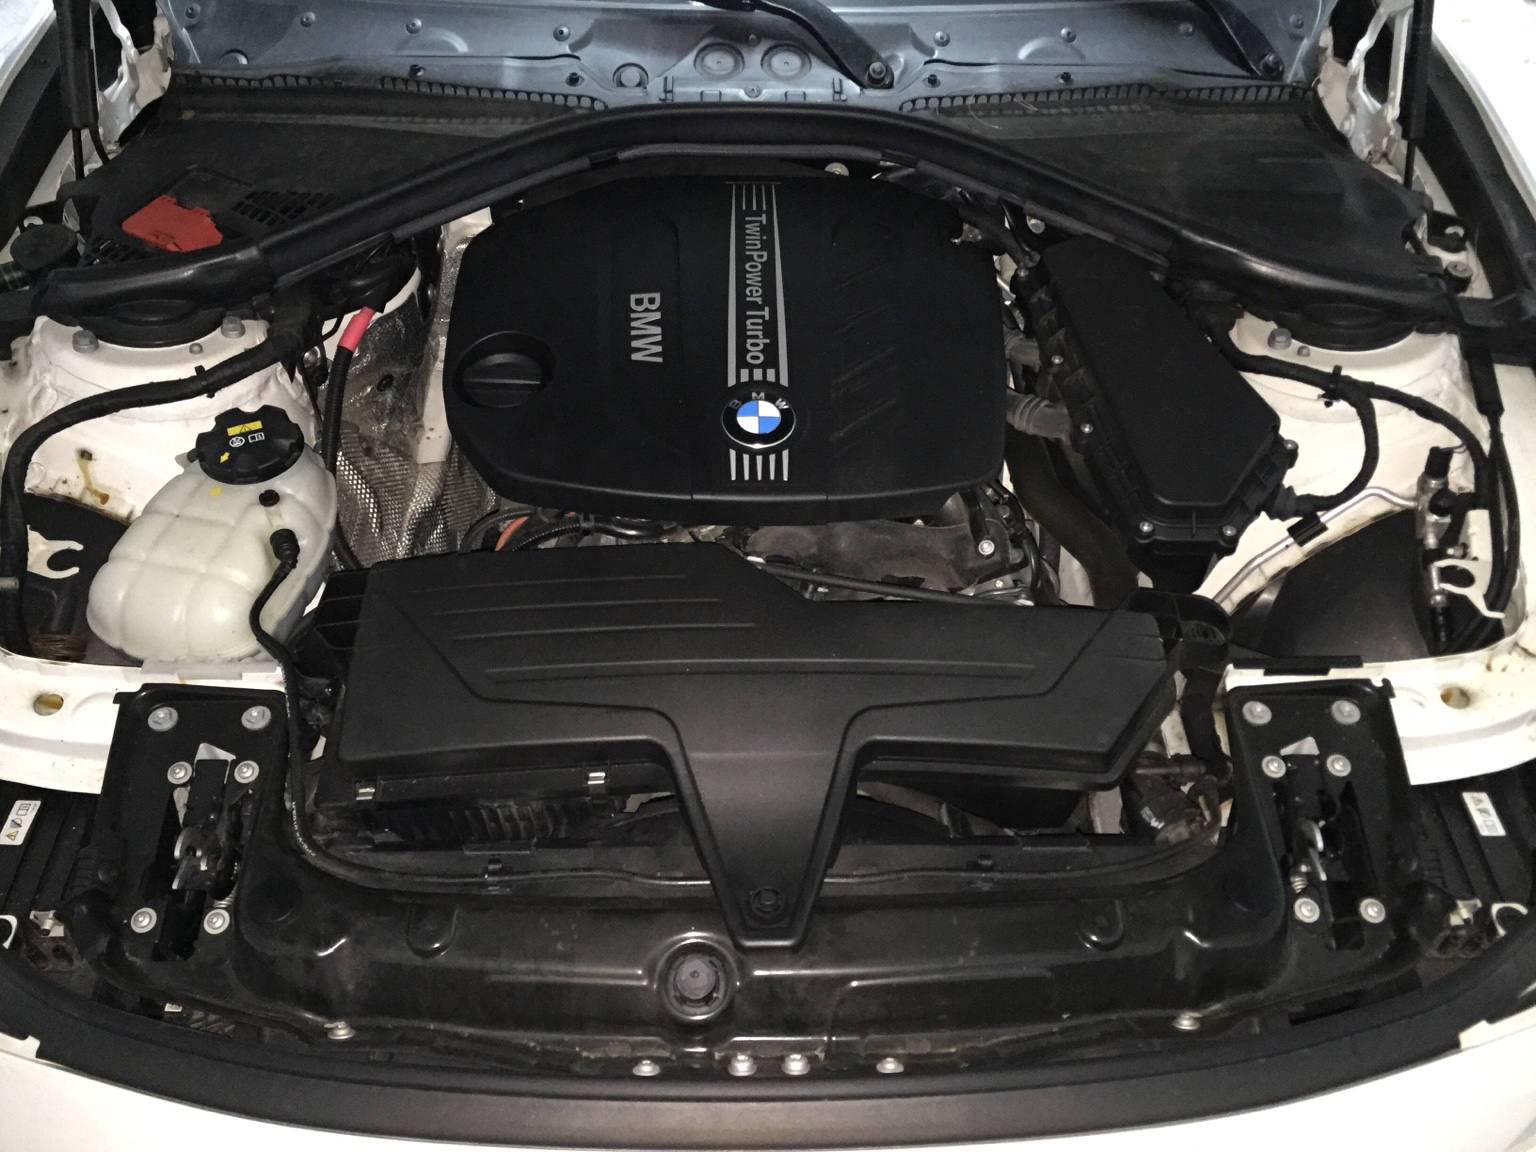 Rumore inquietante BMW 320d Touring F31 | BMWpassion forum e blog